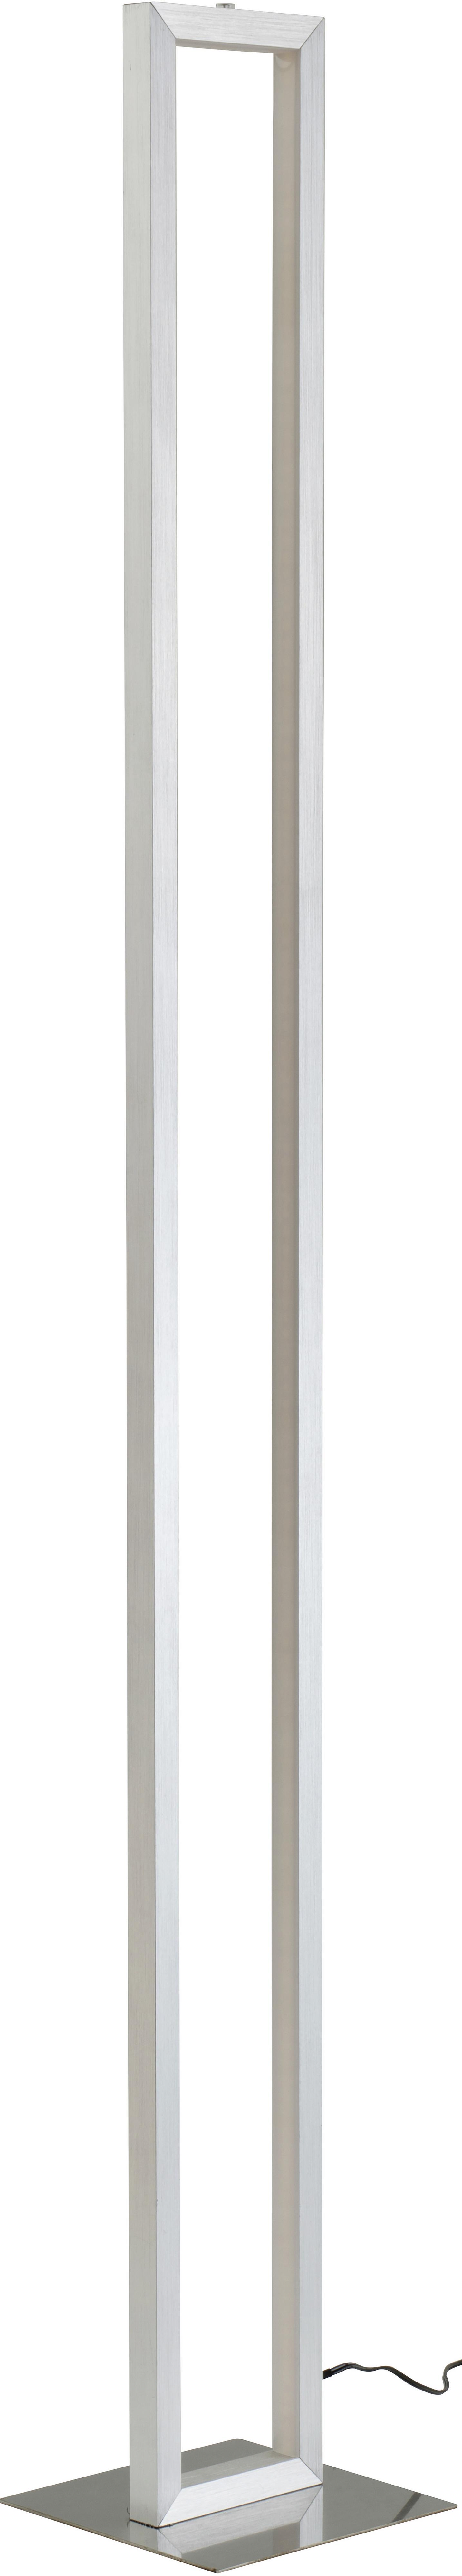 Lampadar LED Erion - culoare nichel/alb, Konventionell, plastic/metal (16/16/120cm) - Premium Living